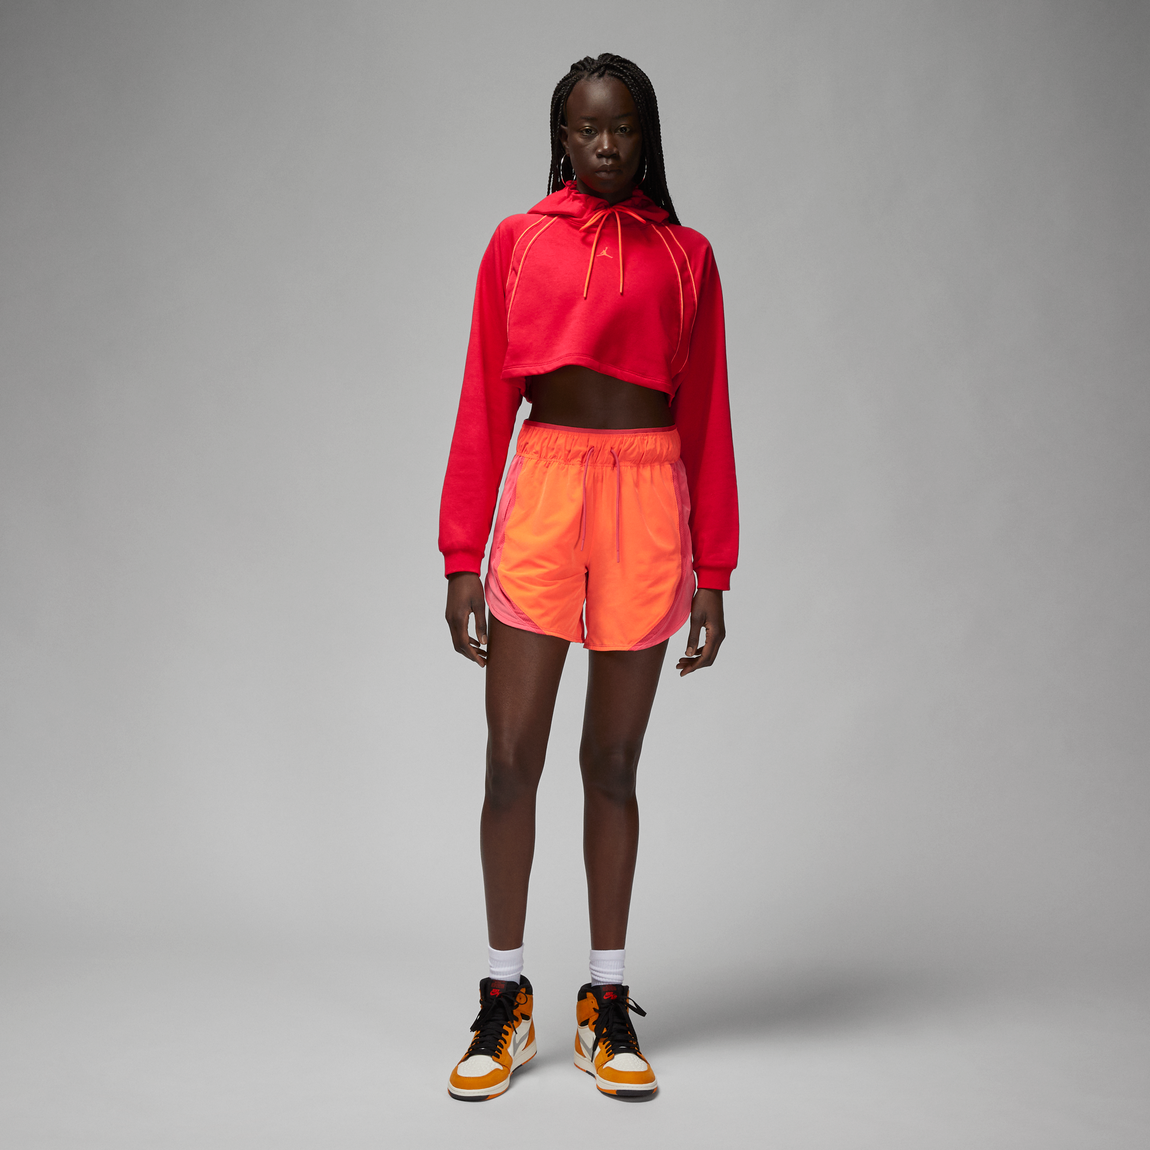 Women's Jordan Sport Shorts (Safety Orange/Fire Red/Lobster) - Women's Jordan Sport Shorts (Safety Orange/Fire Red/Lobster) - 